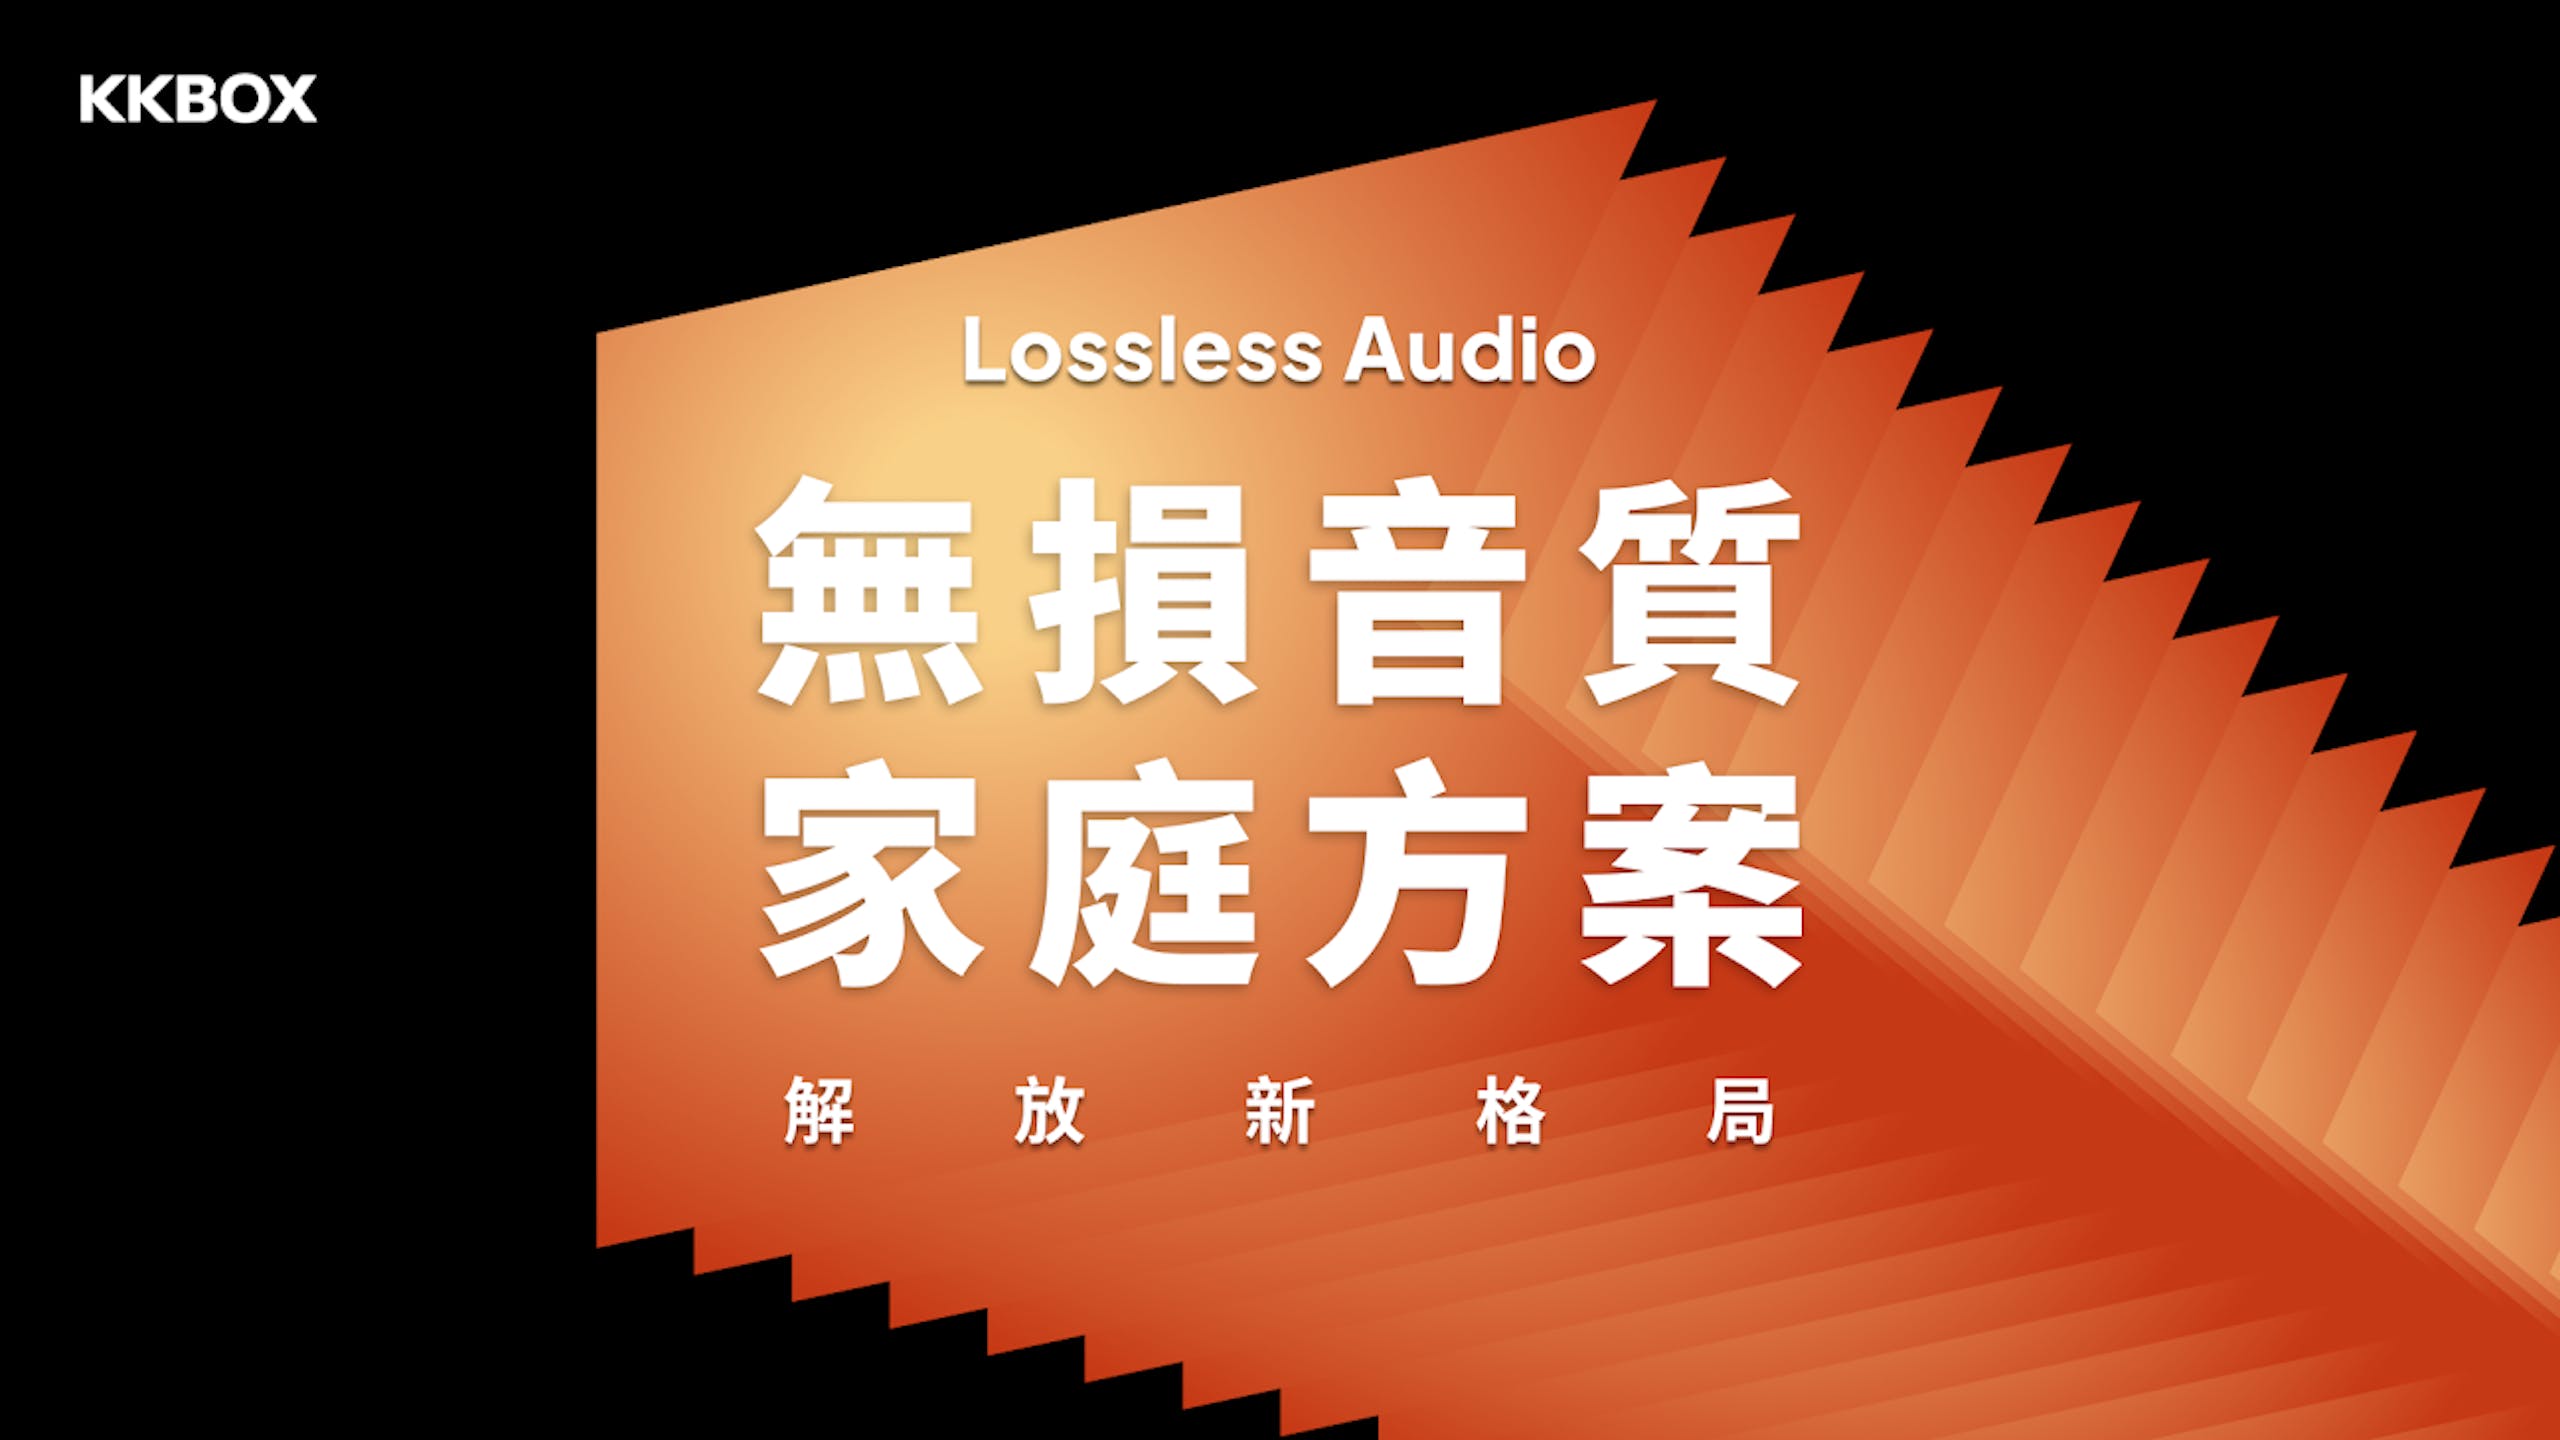 照片中提到了KKBOX、Lossless Audio、無損音質，跟KKBox有關，包含了橙子、商標、字形、圖形、牌